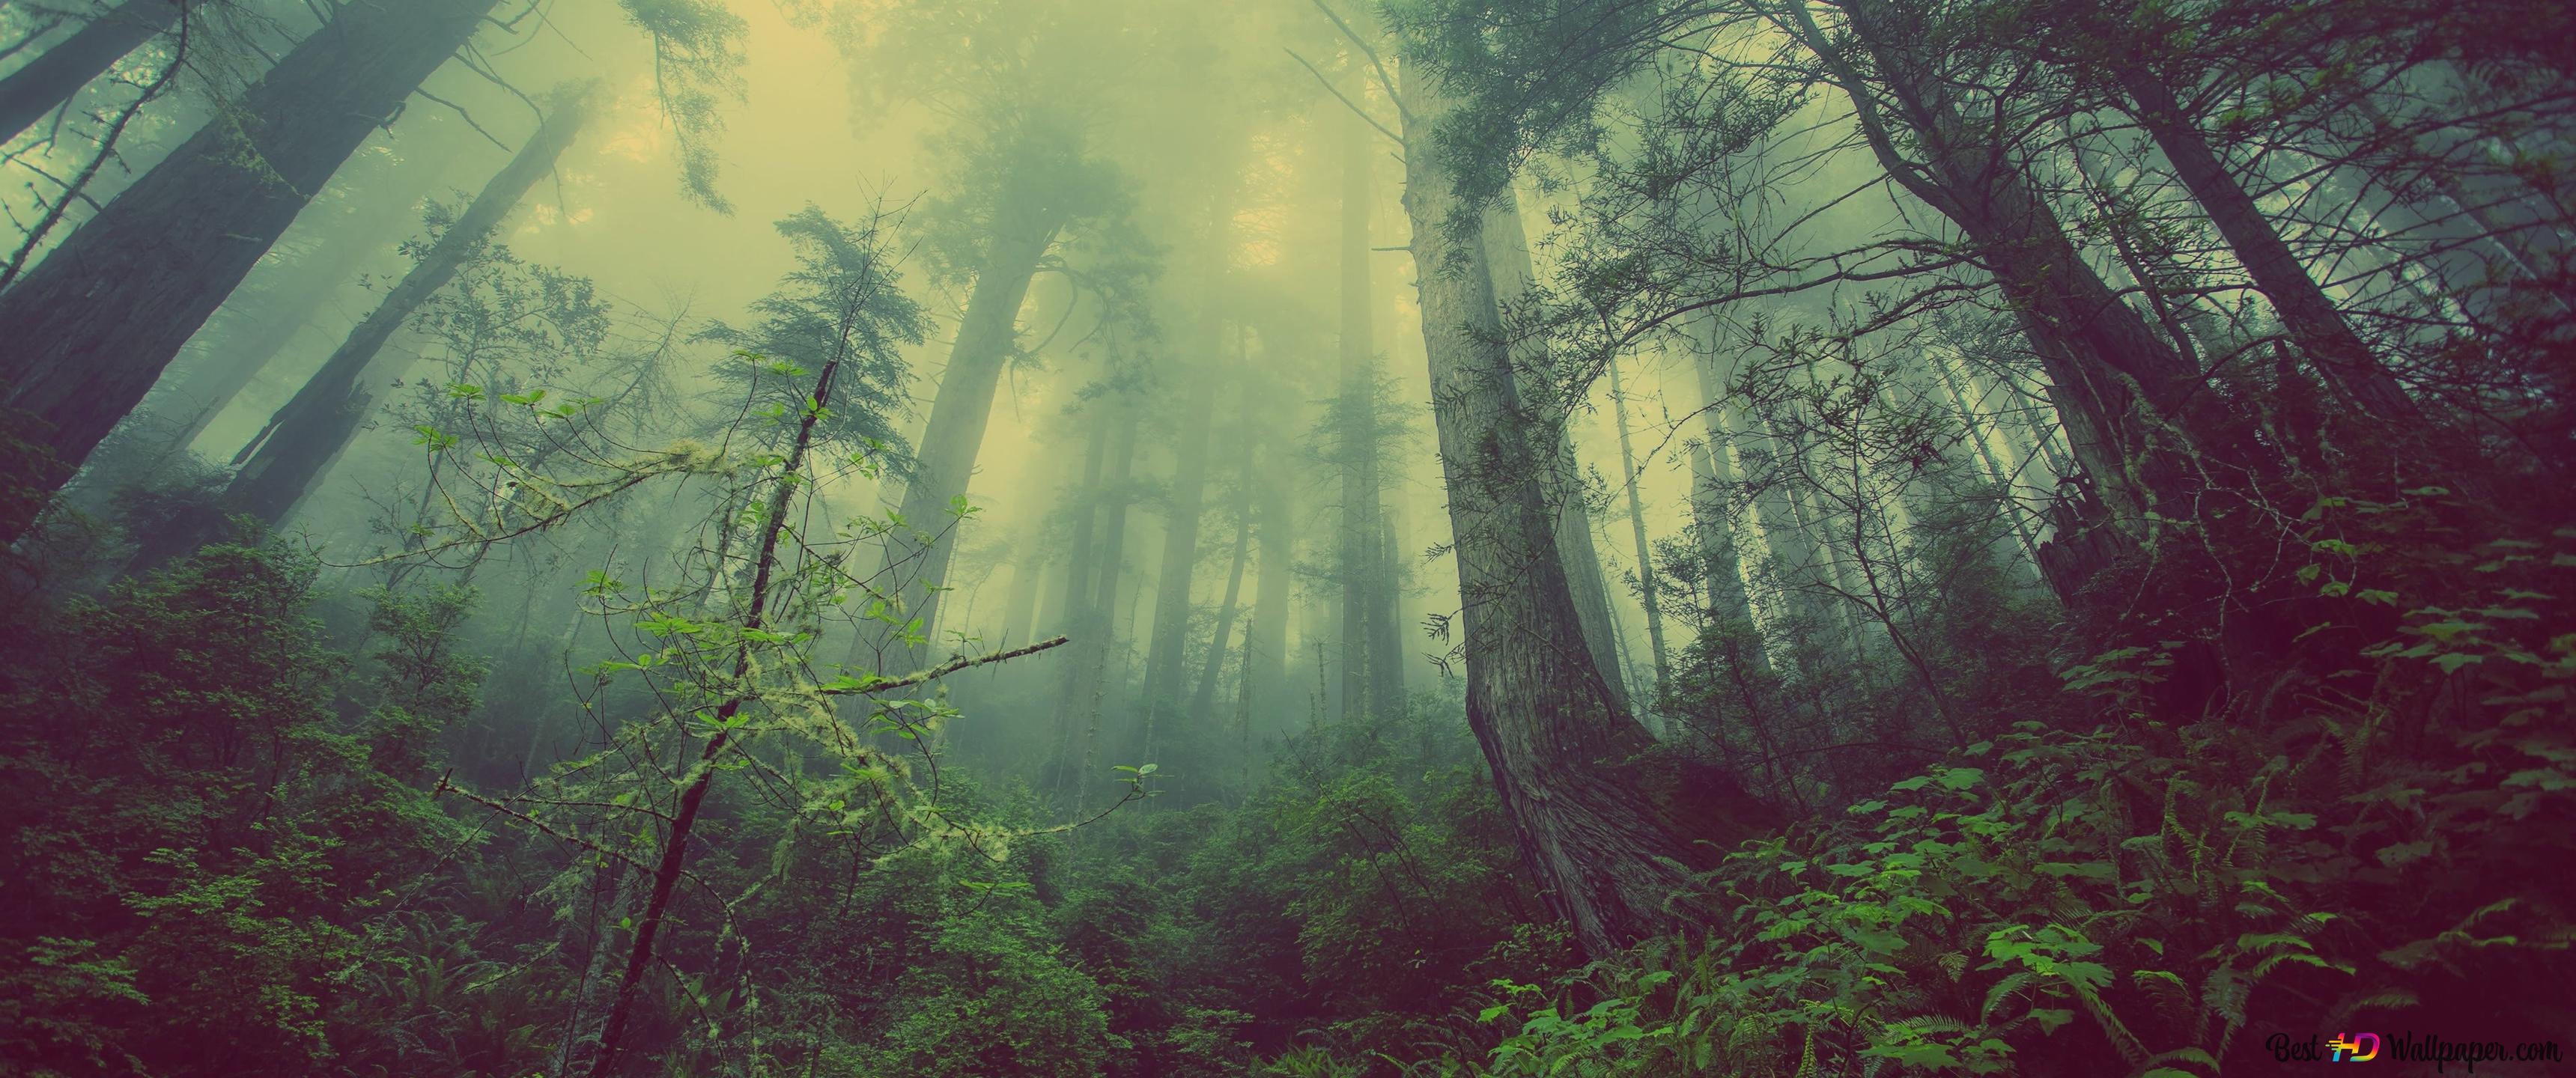 fog descending into the forest 4K wallpaper download